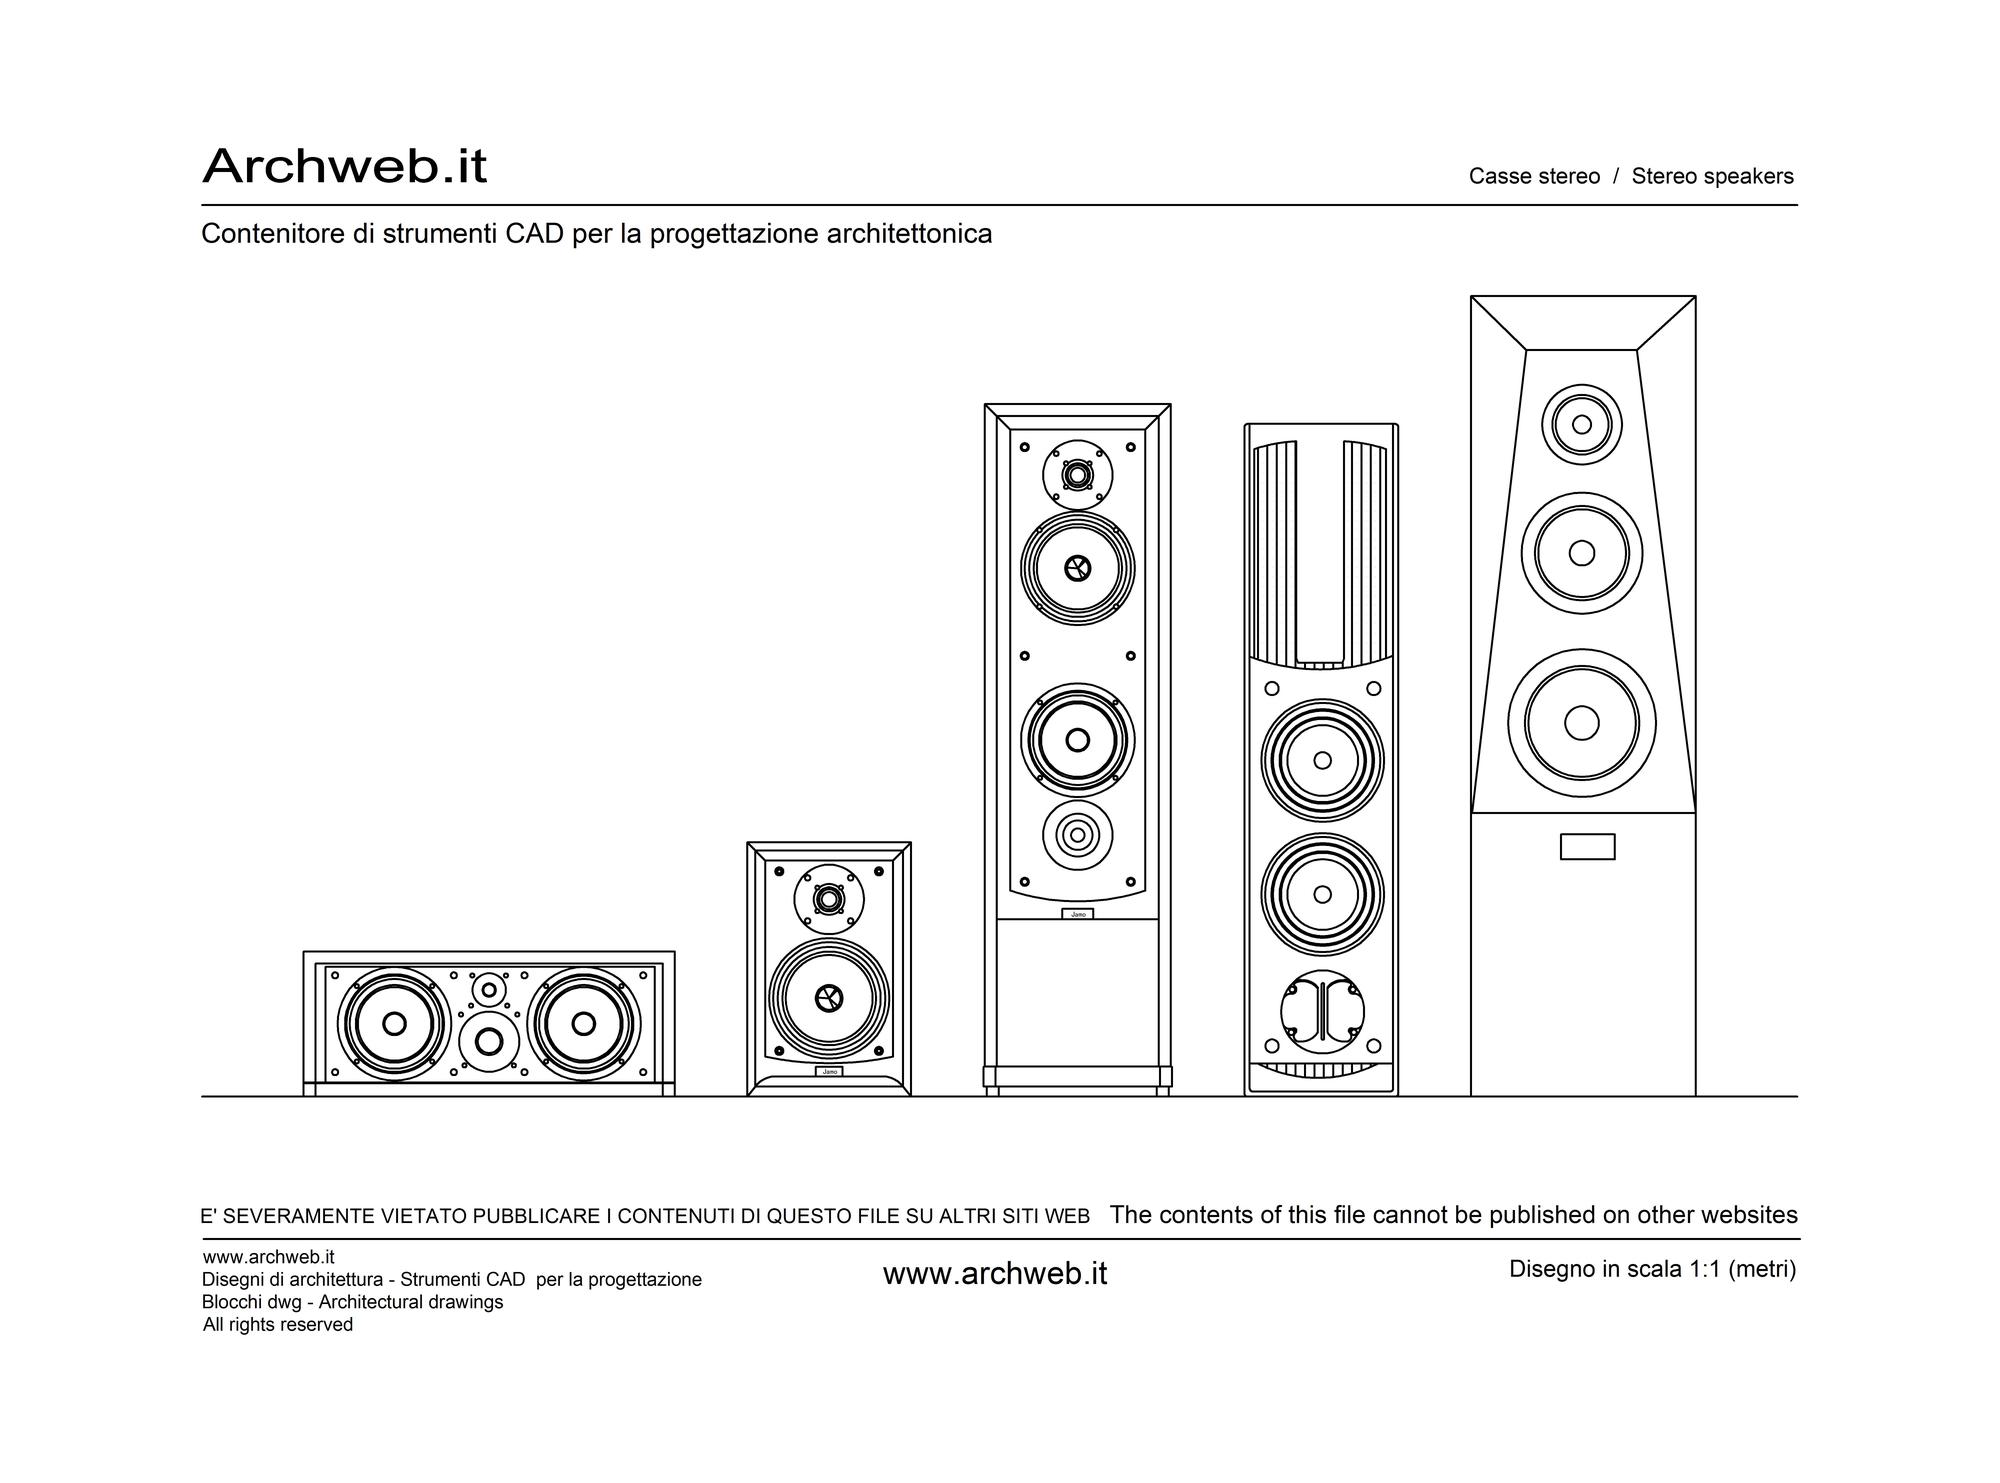 Stereo speakers drawings